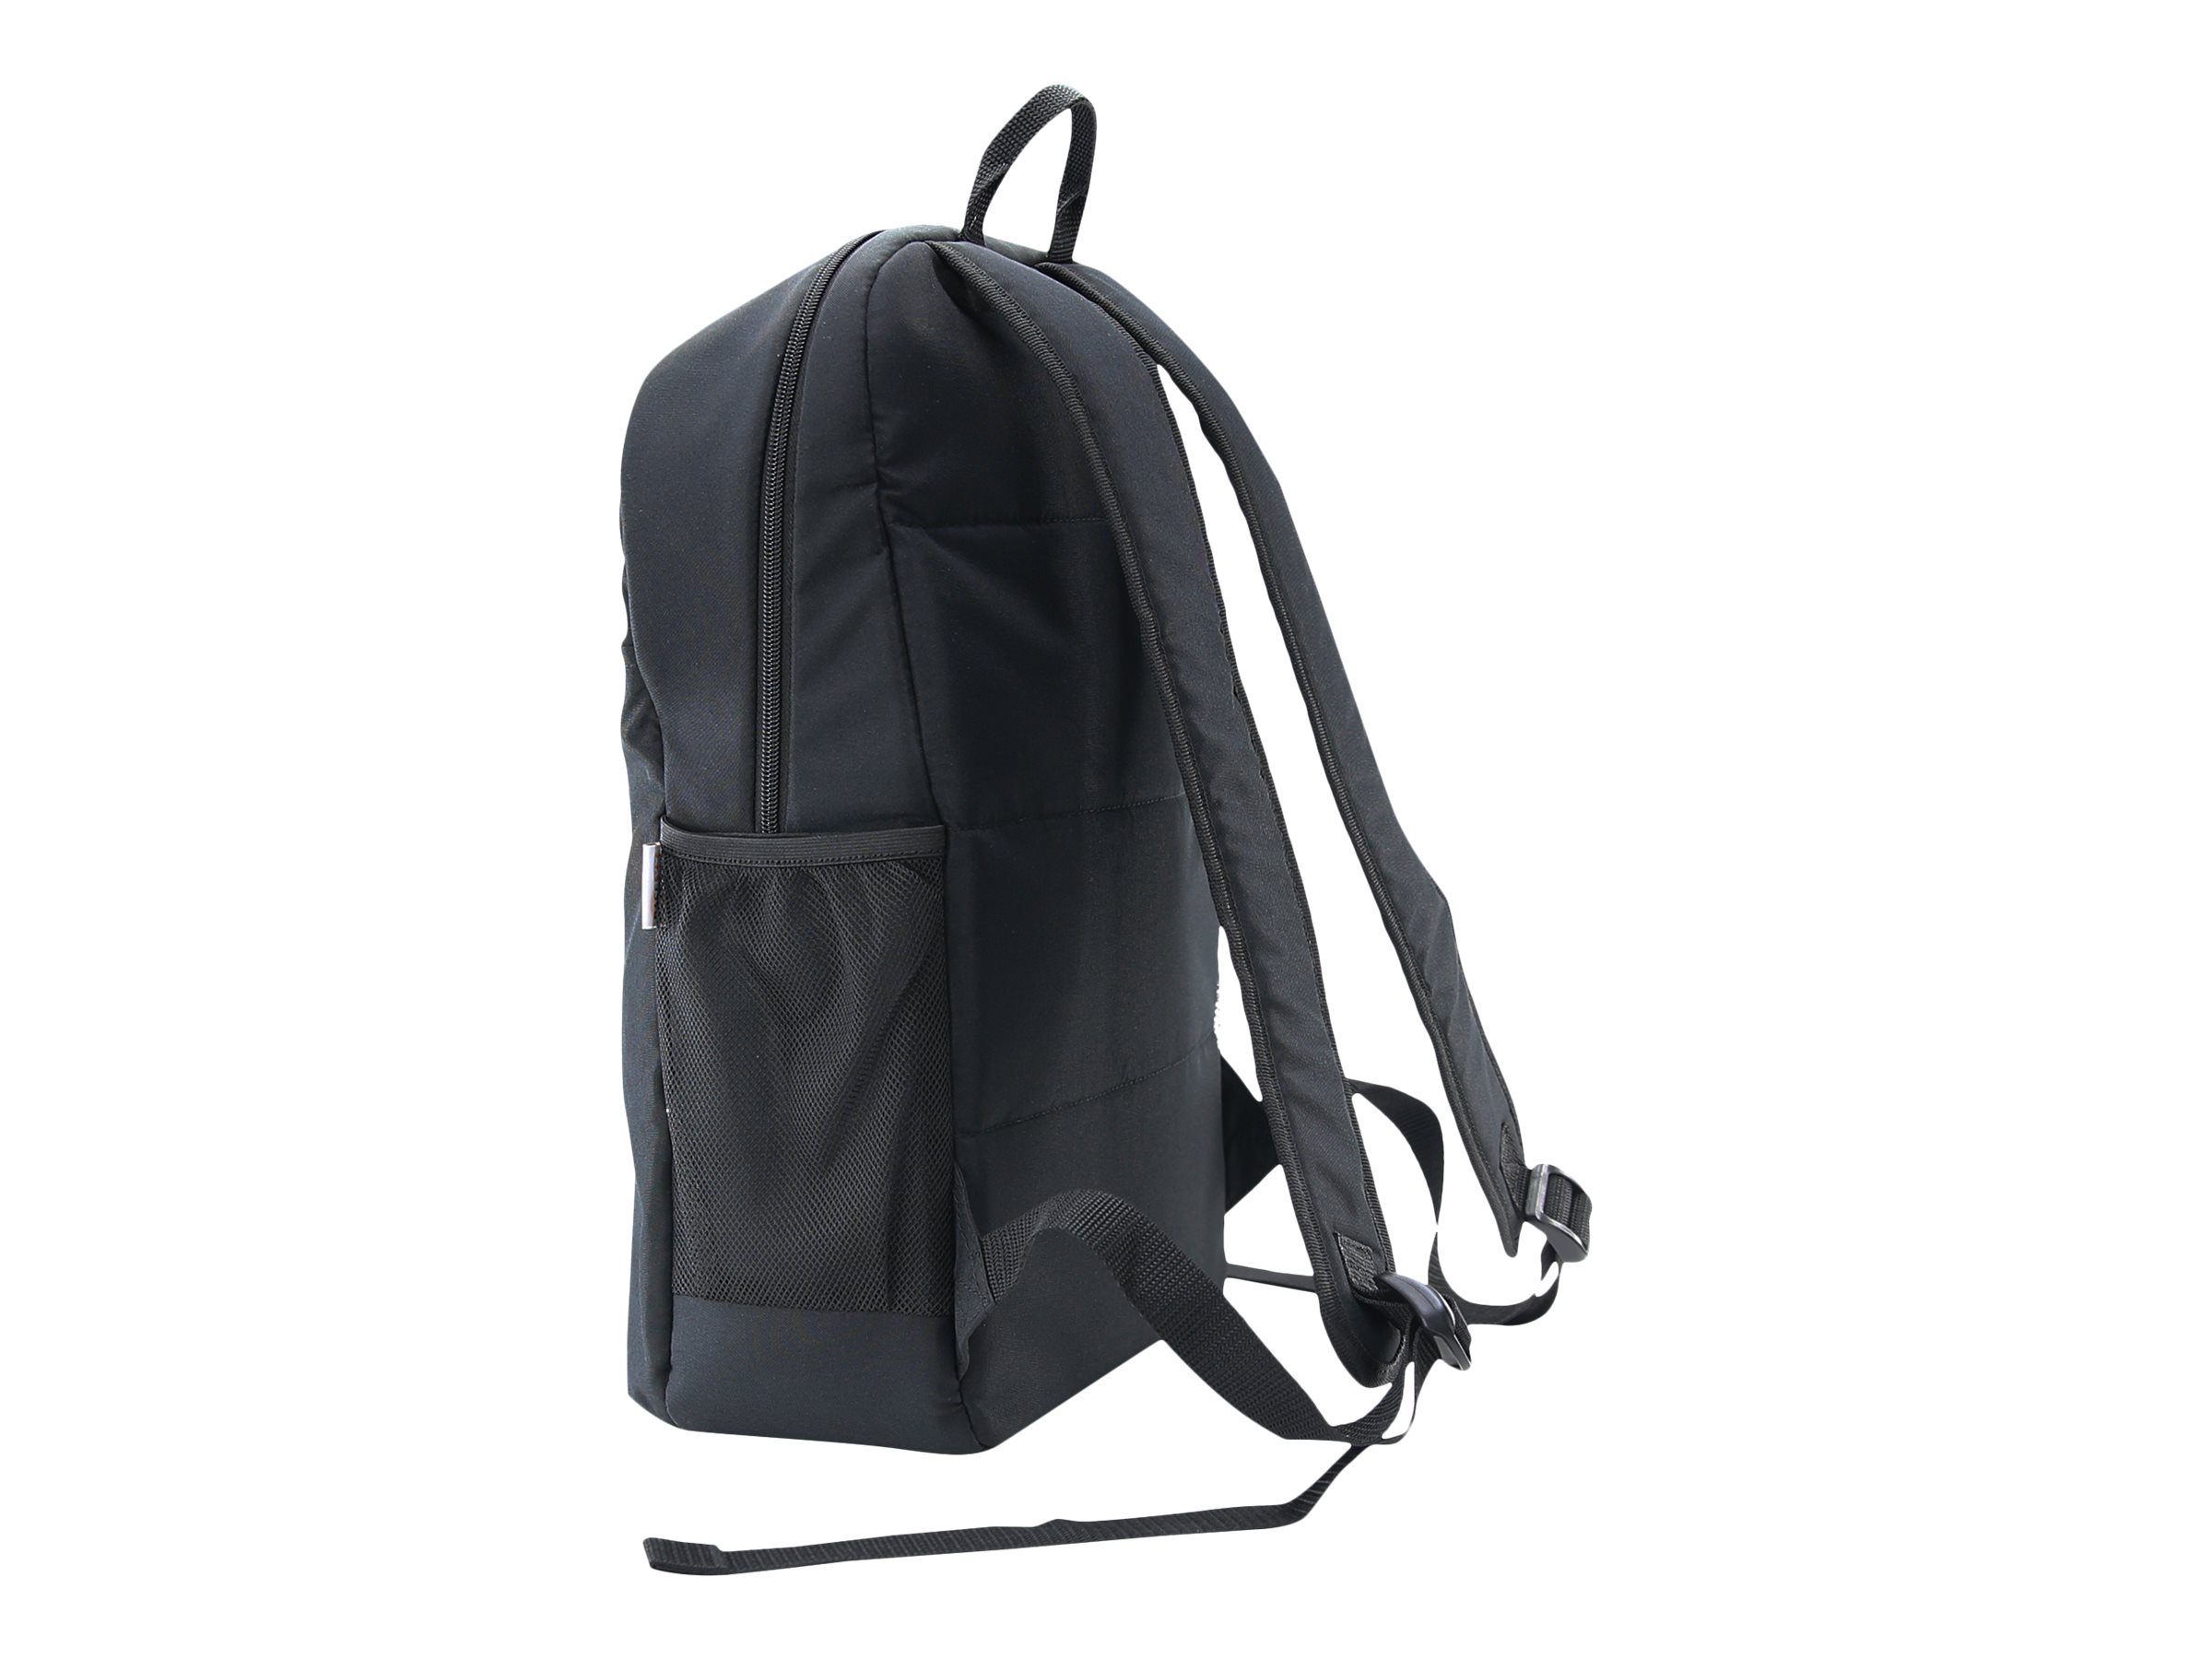 Notebook-Rucksack Backpack Laptop 13-15.6 black DICOTA DICOTA